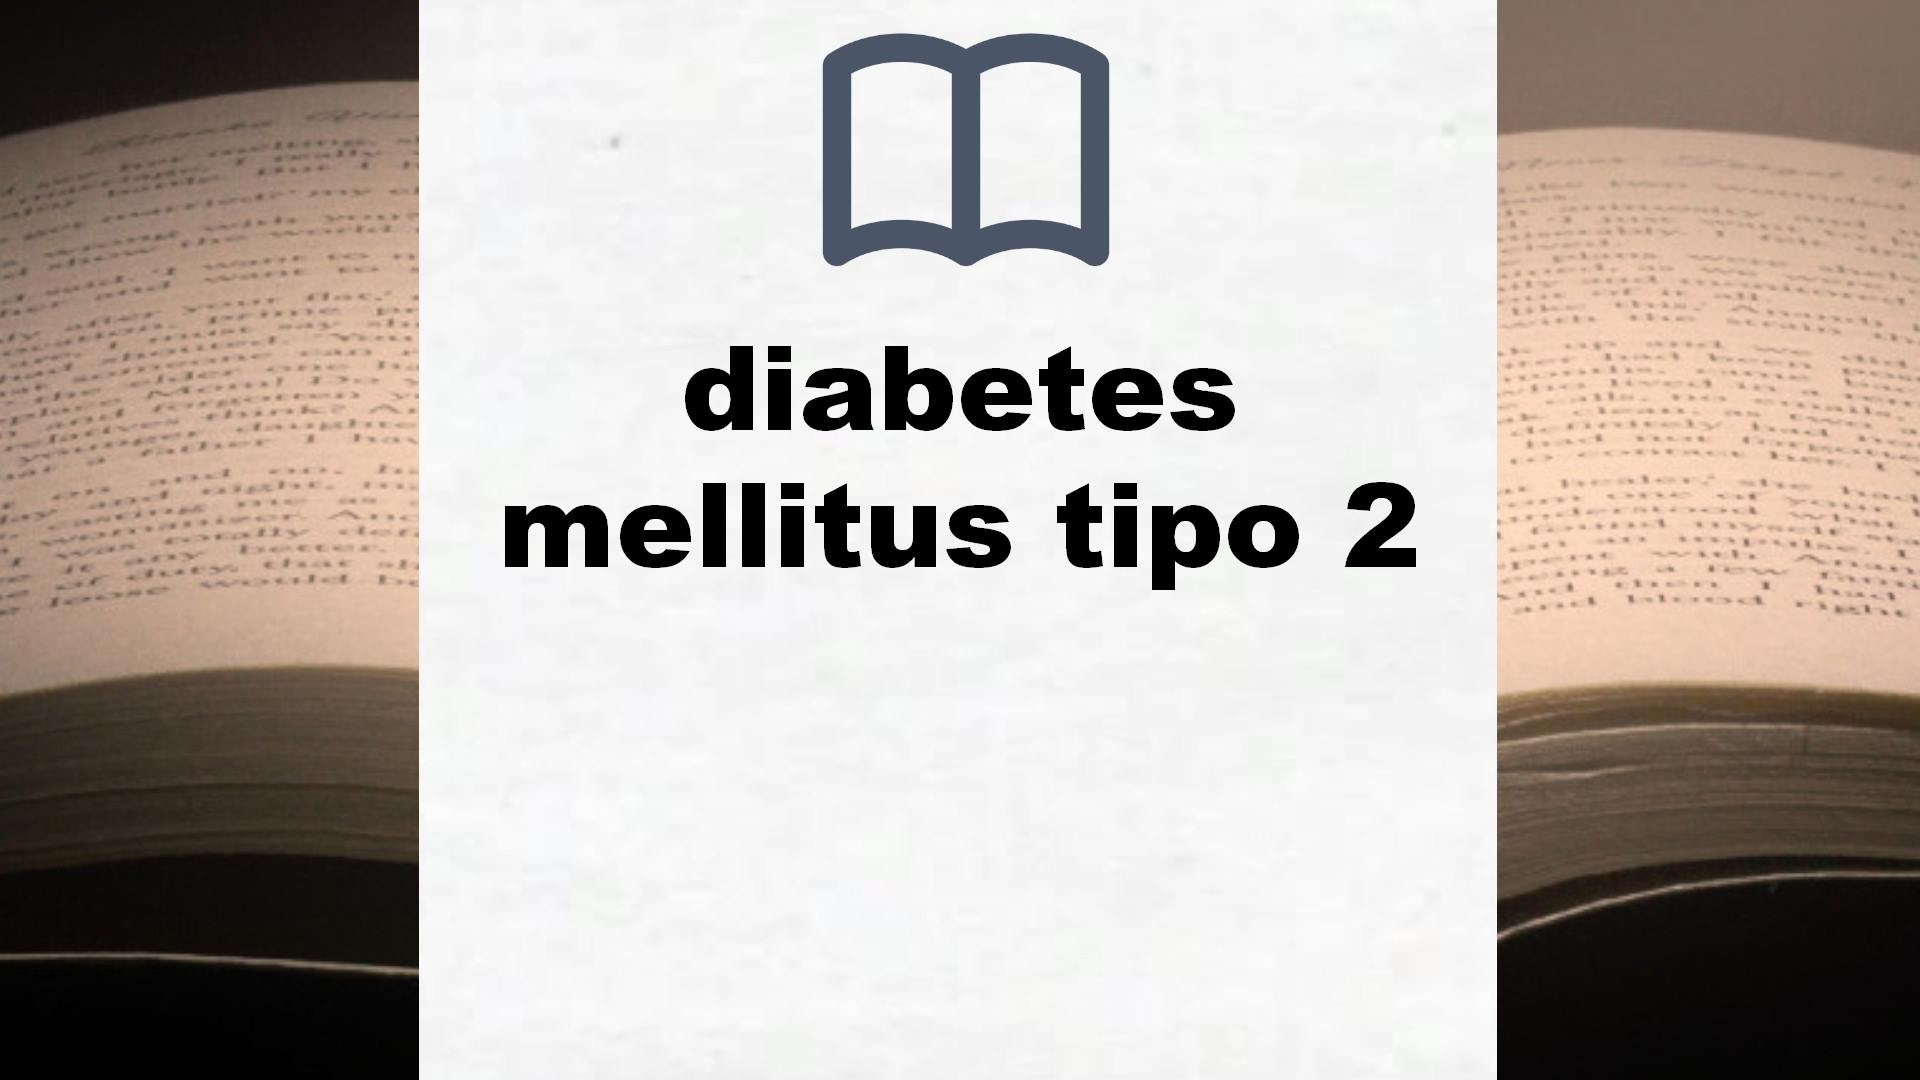 Libros sobre diabetes mellitus tipo 2